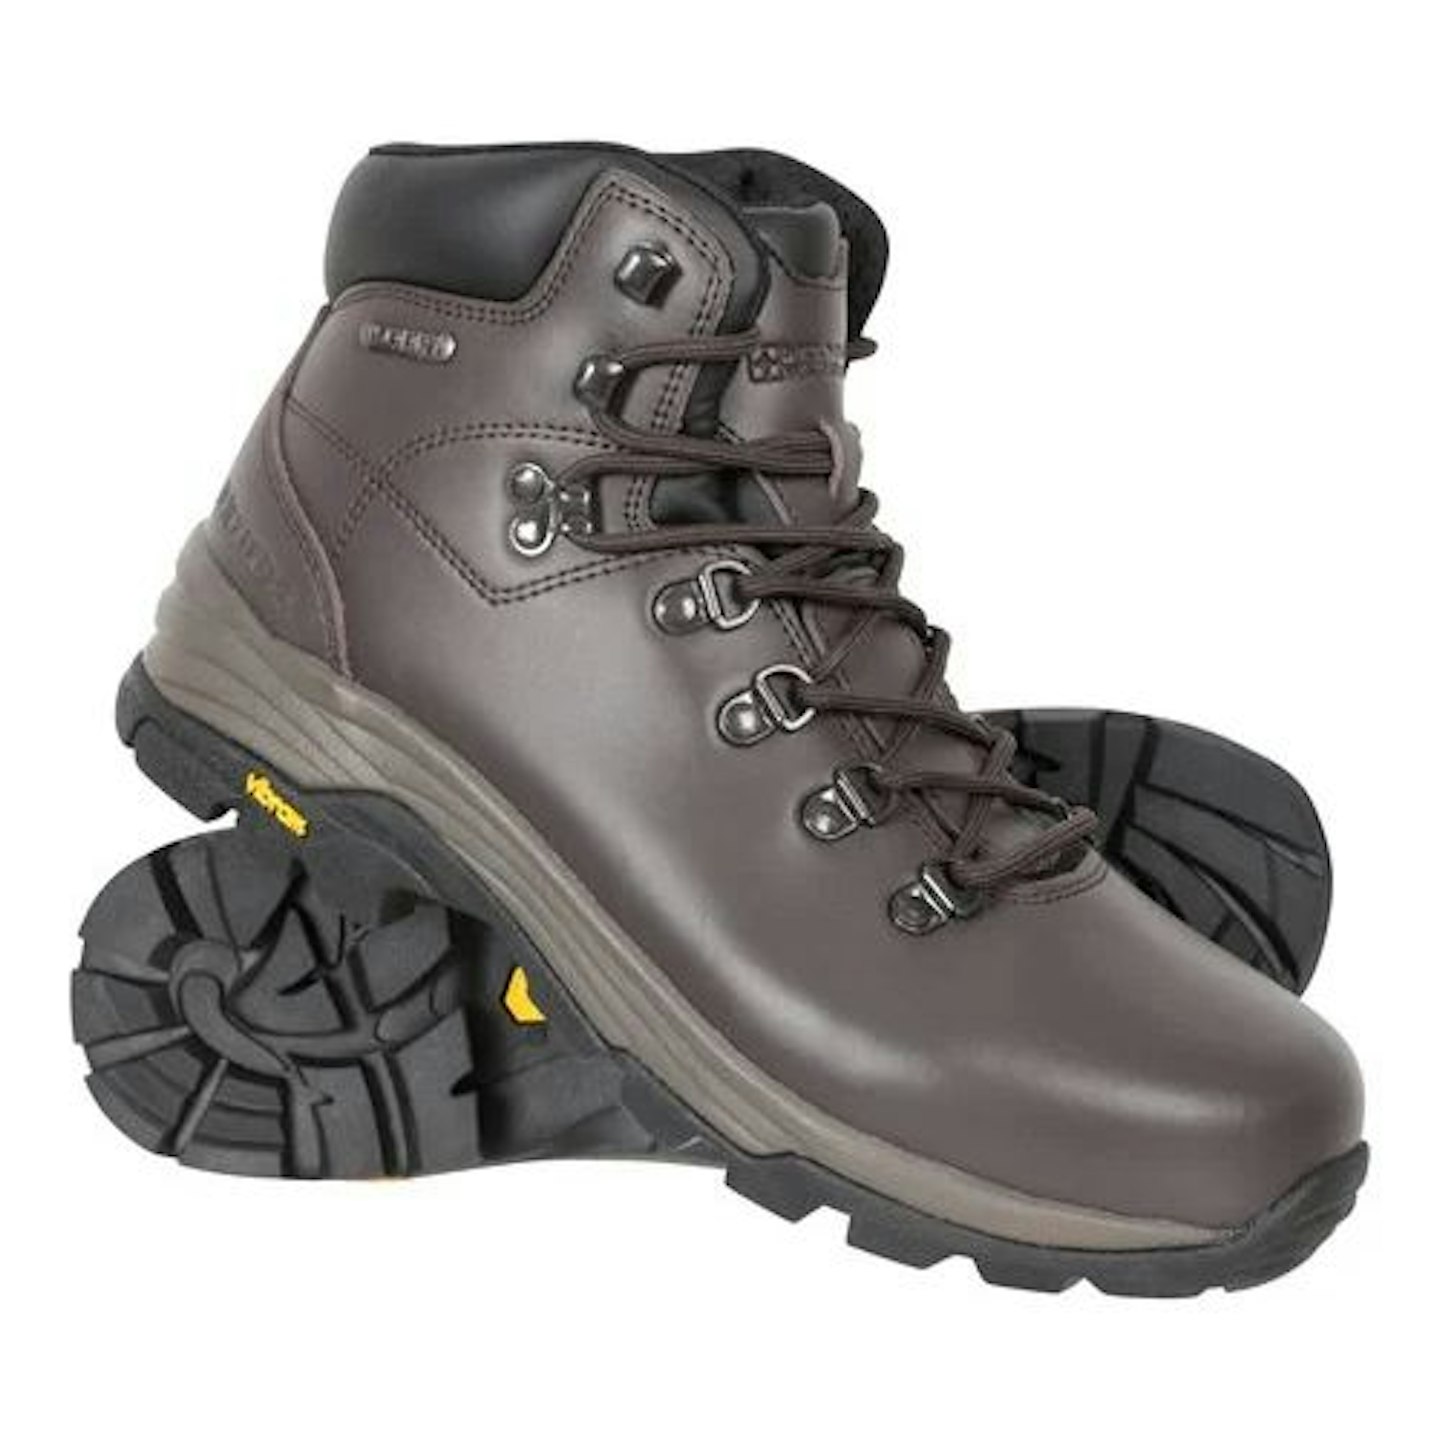 Skye Womens Waterproof Leather Walking Boots